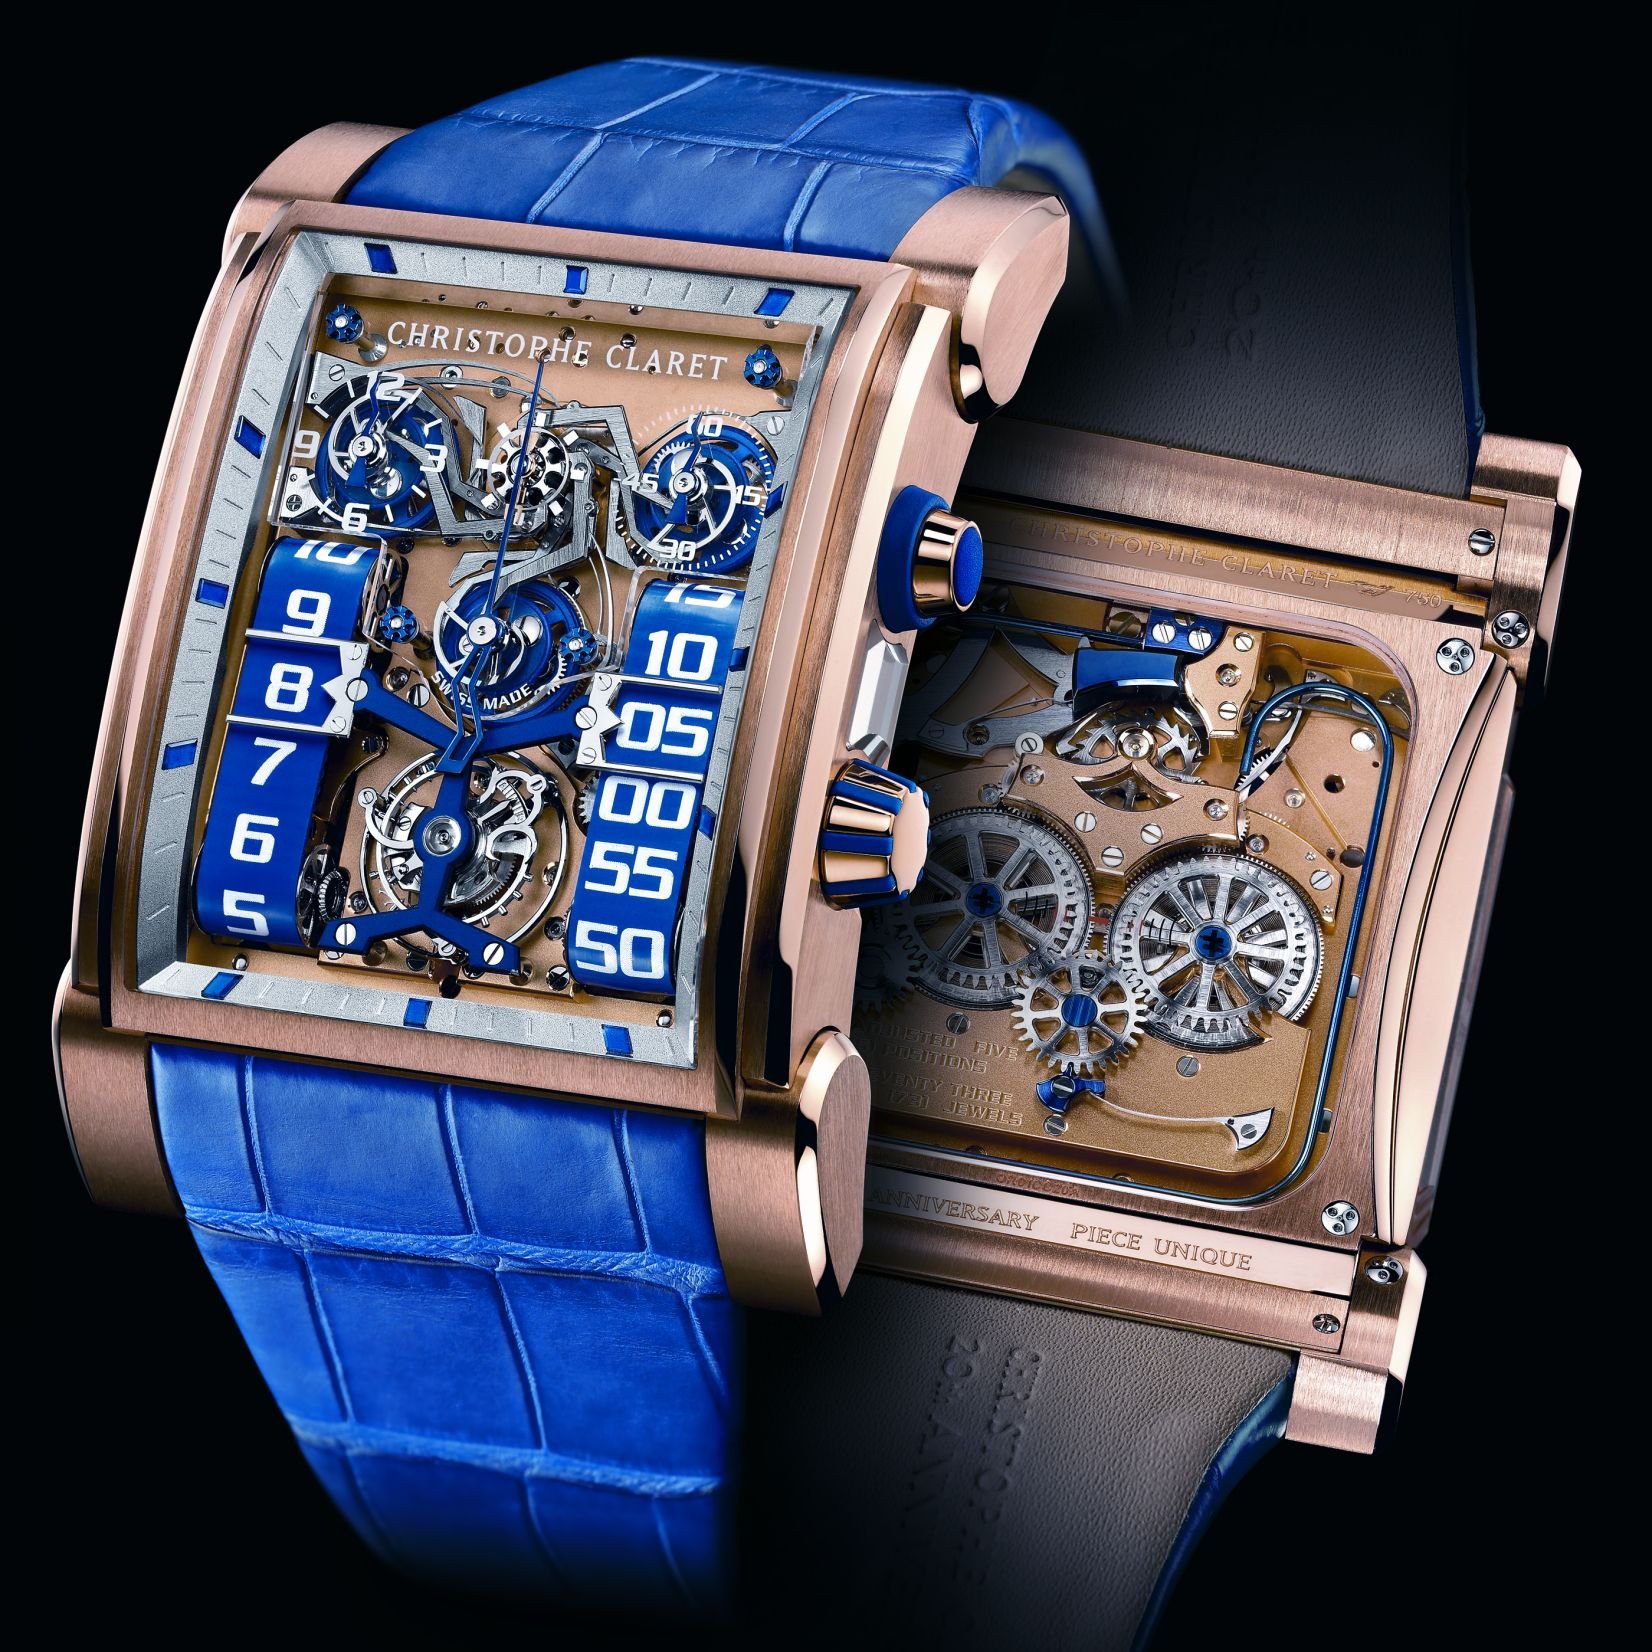 Наручные часы русском языке. Christophe Claret часы. Необычные наручные часы. Необычные часы наручные мужские. Эксклюзивные мужские часы.